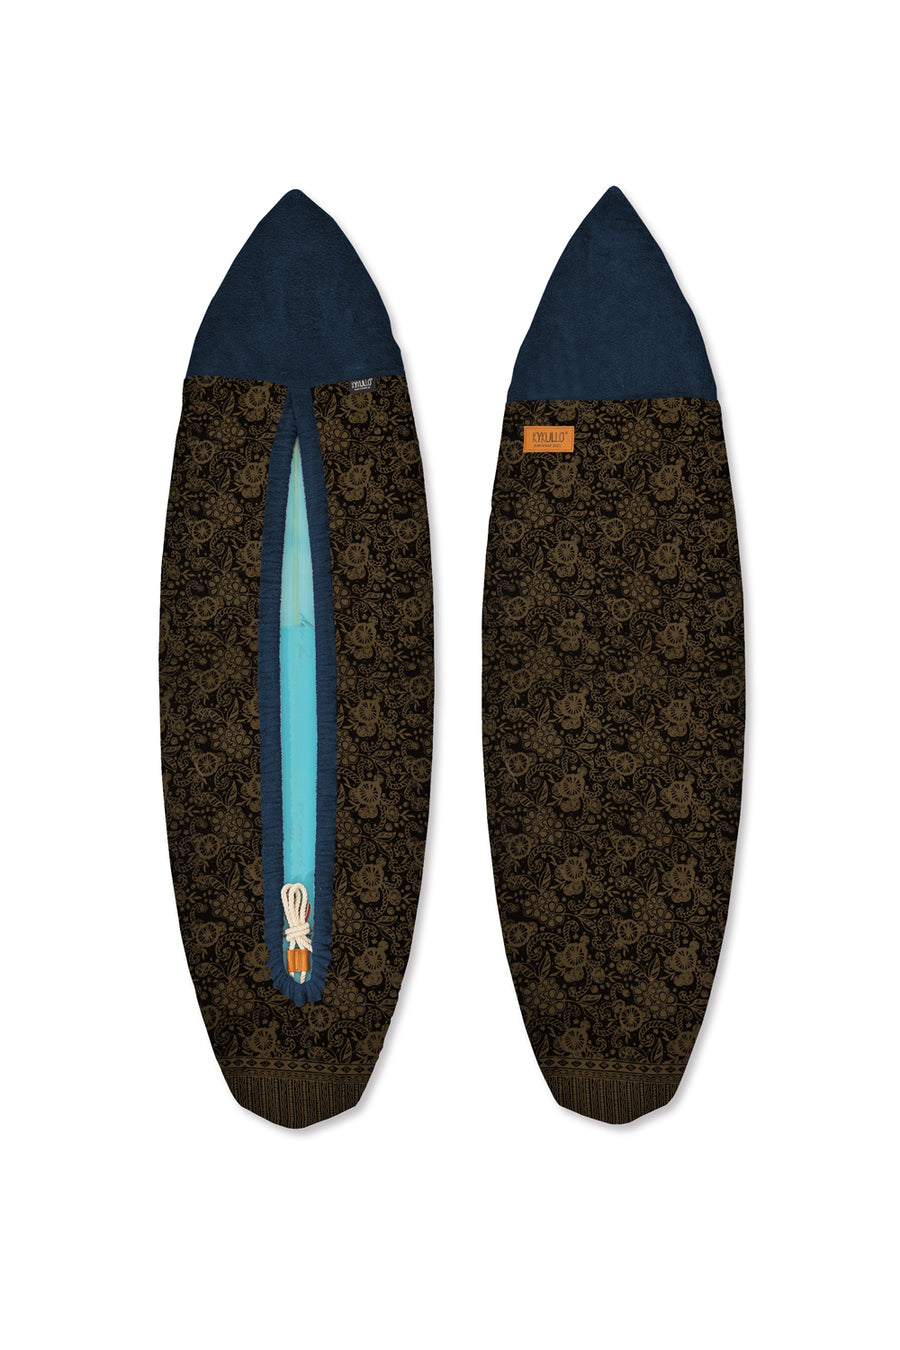 SURFWRAP 5'10 - NAVY (RETAIL)